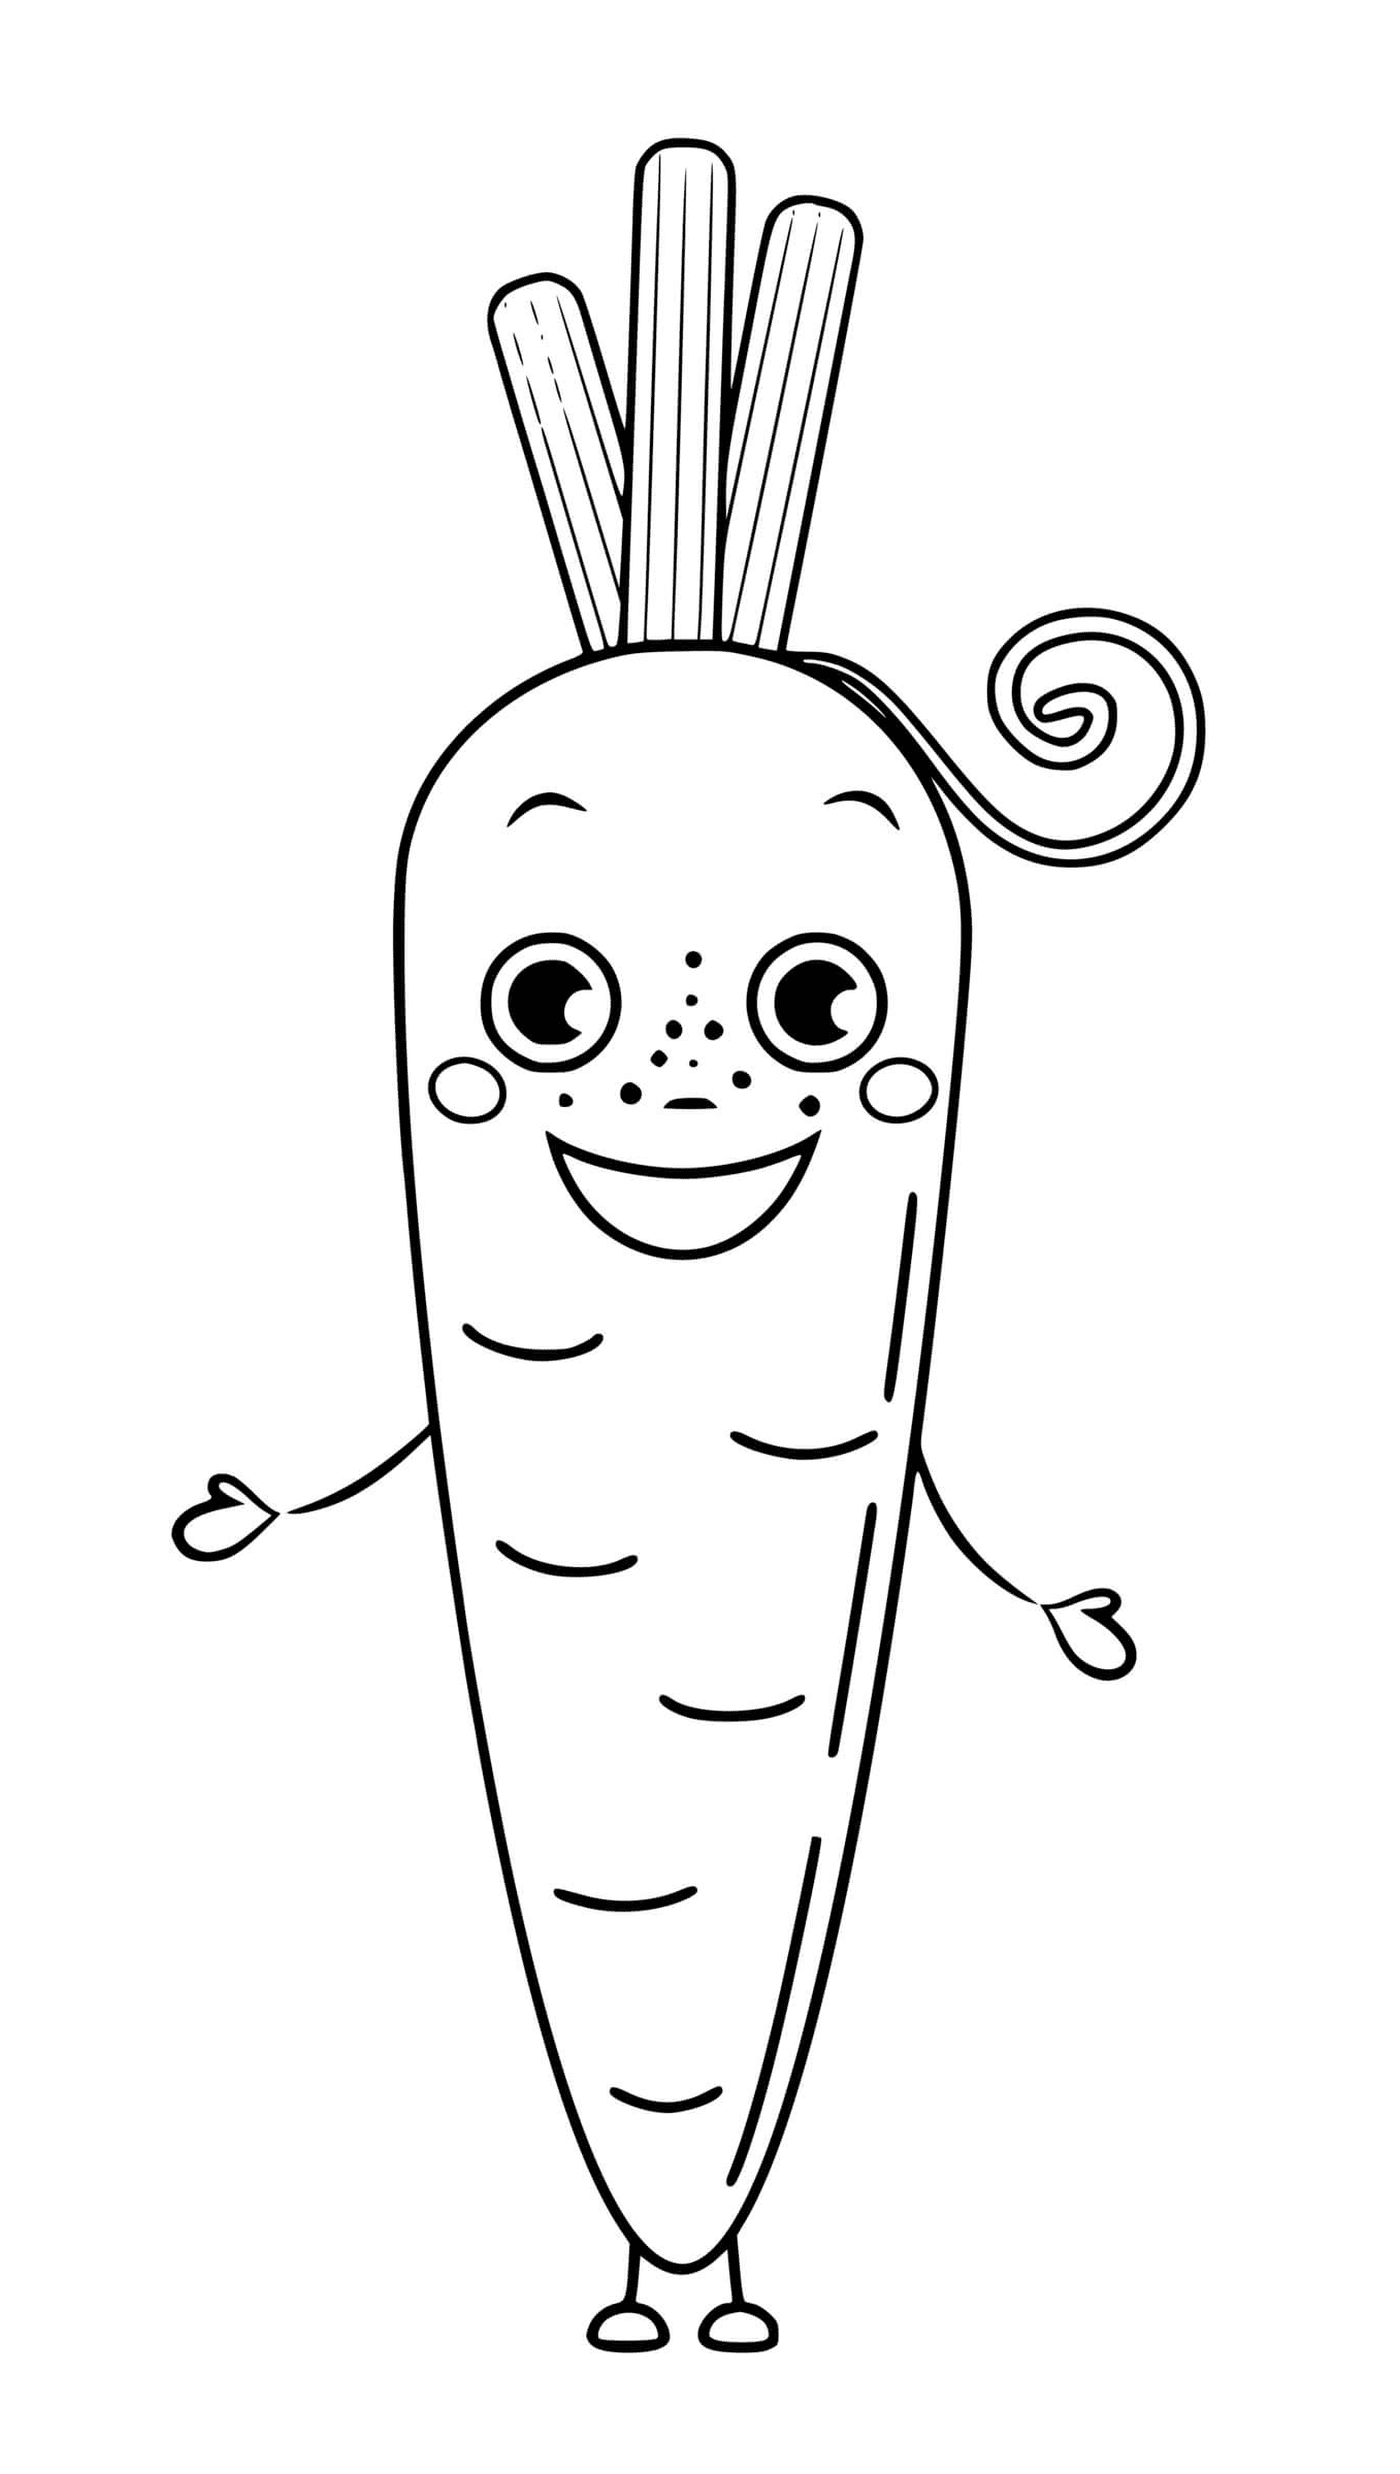   Carotte légume avec yeux et sourire, une carotte avec une queue bouclée 